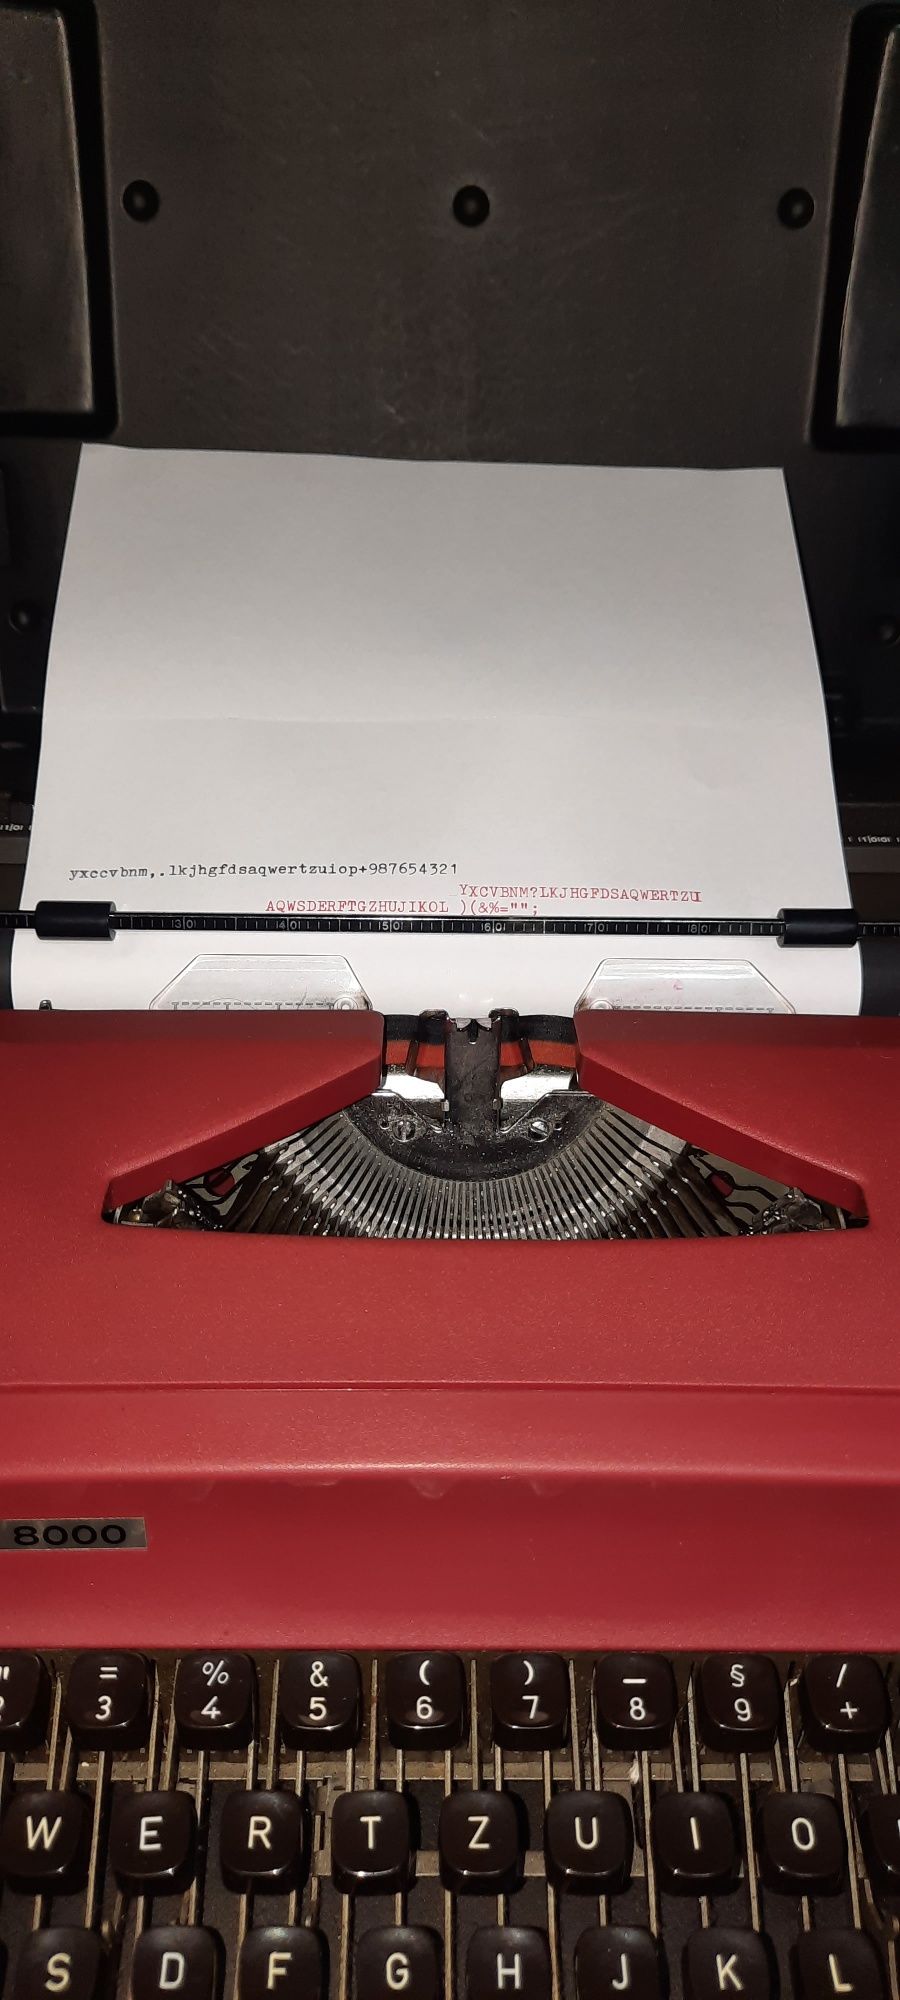 Mașină de scris Modell 8000 impecabilă